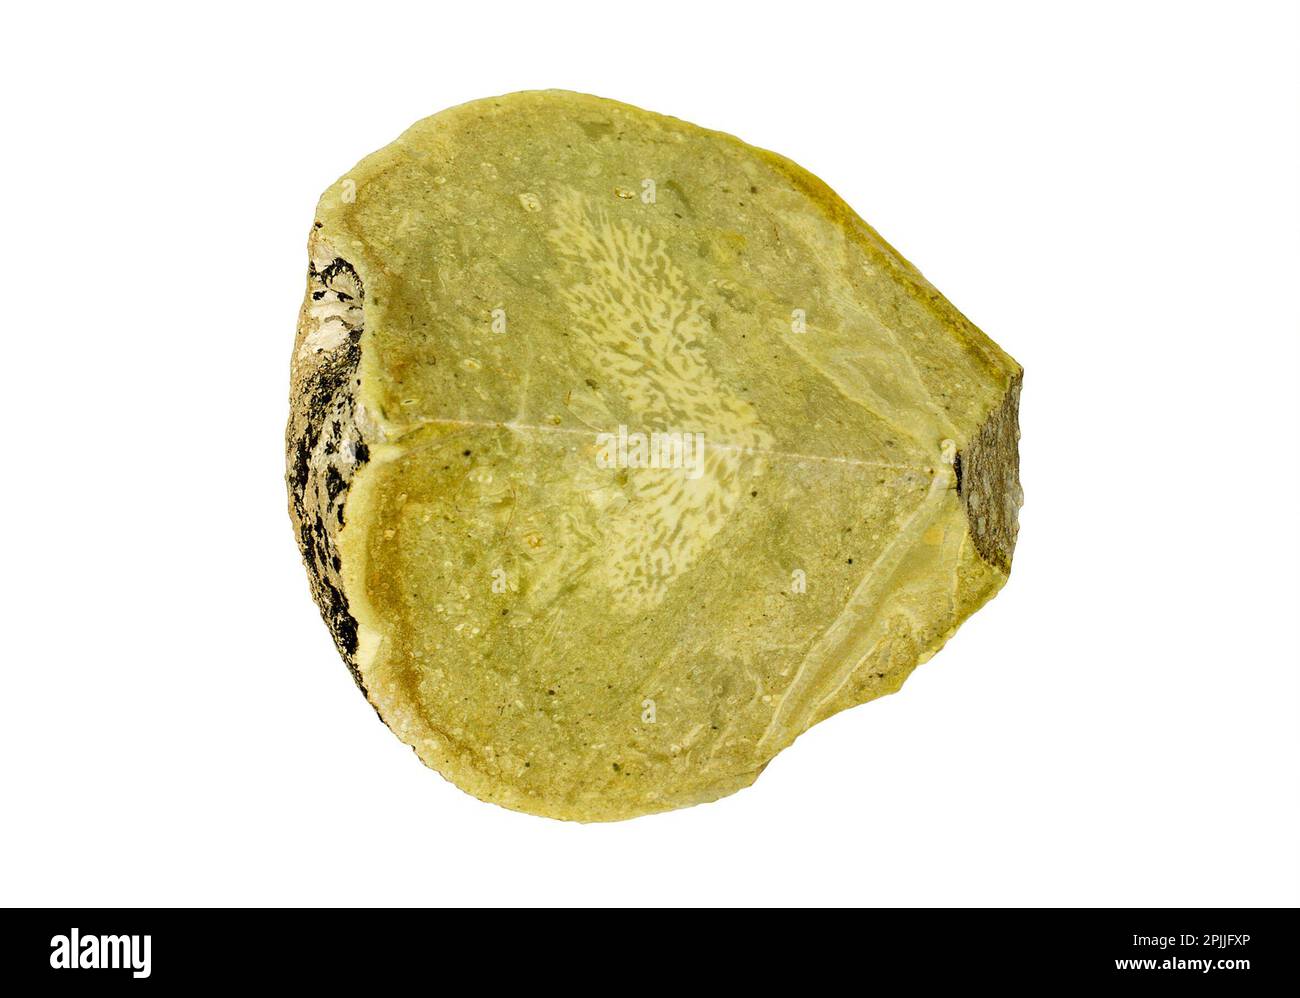 Fosilized sponge, Actinocoella maedrima, fossil specimen isolated on white background Stock Photo